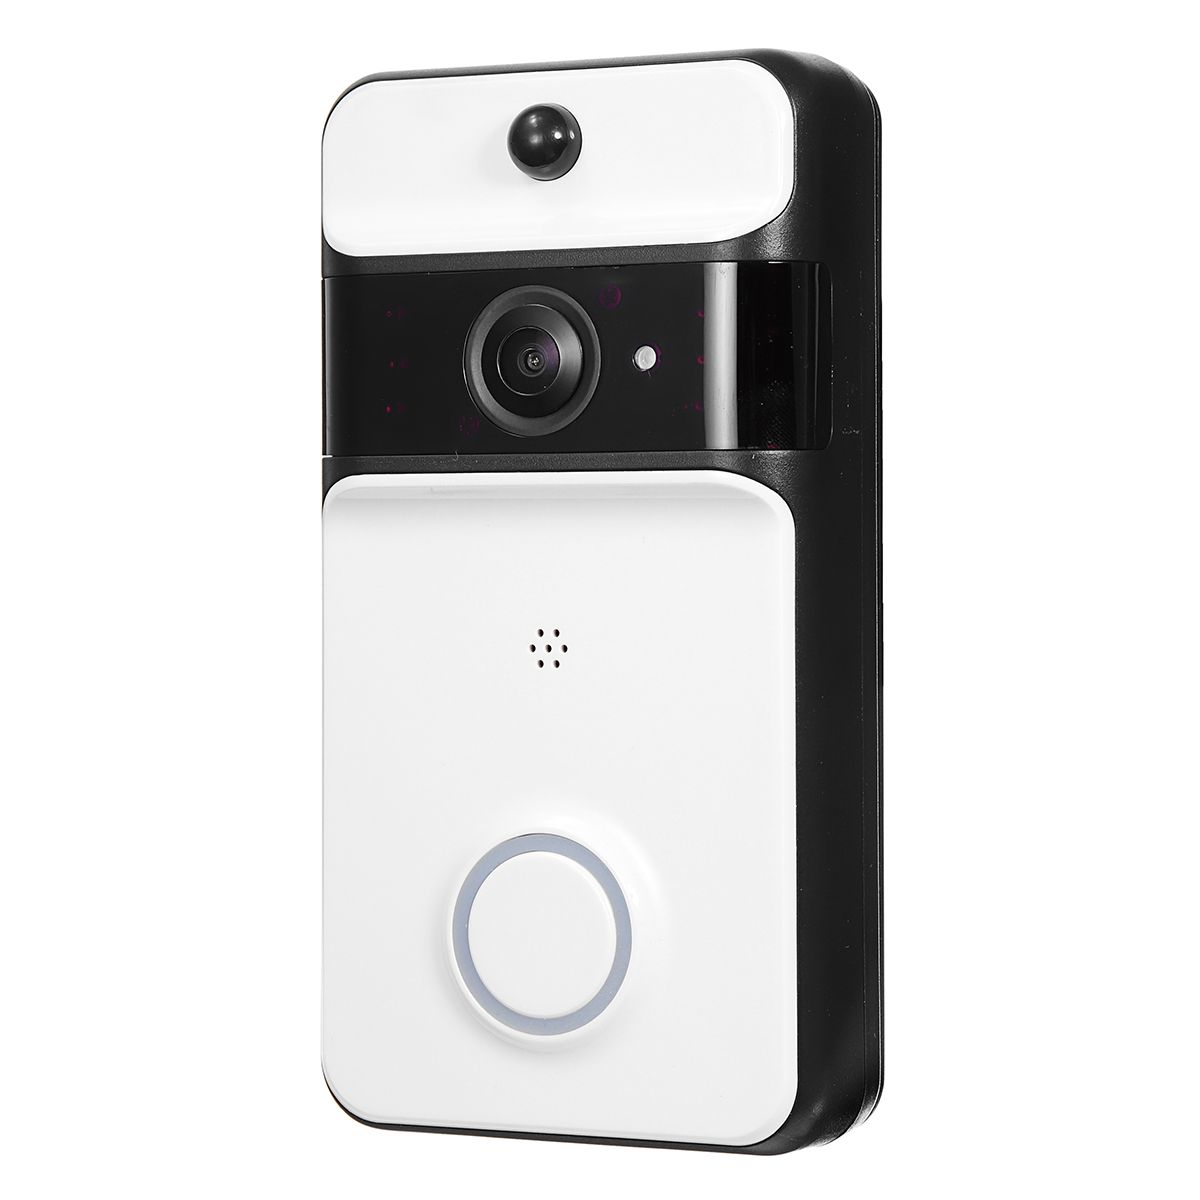 Smart-IR-Wireless-WiFi-DoorBell-Security-Video-Phone-Doorbell-Visual-Recording-1360010